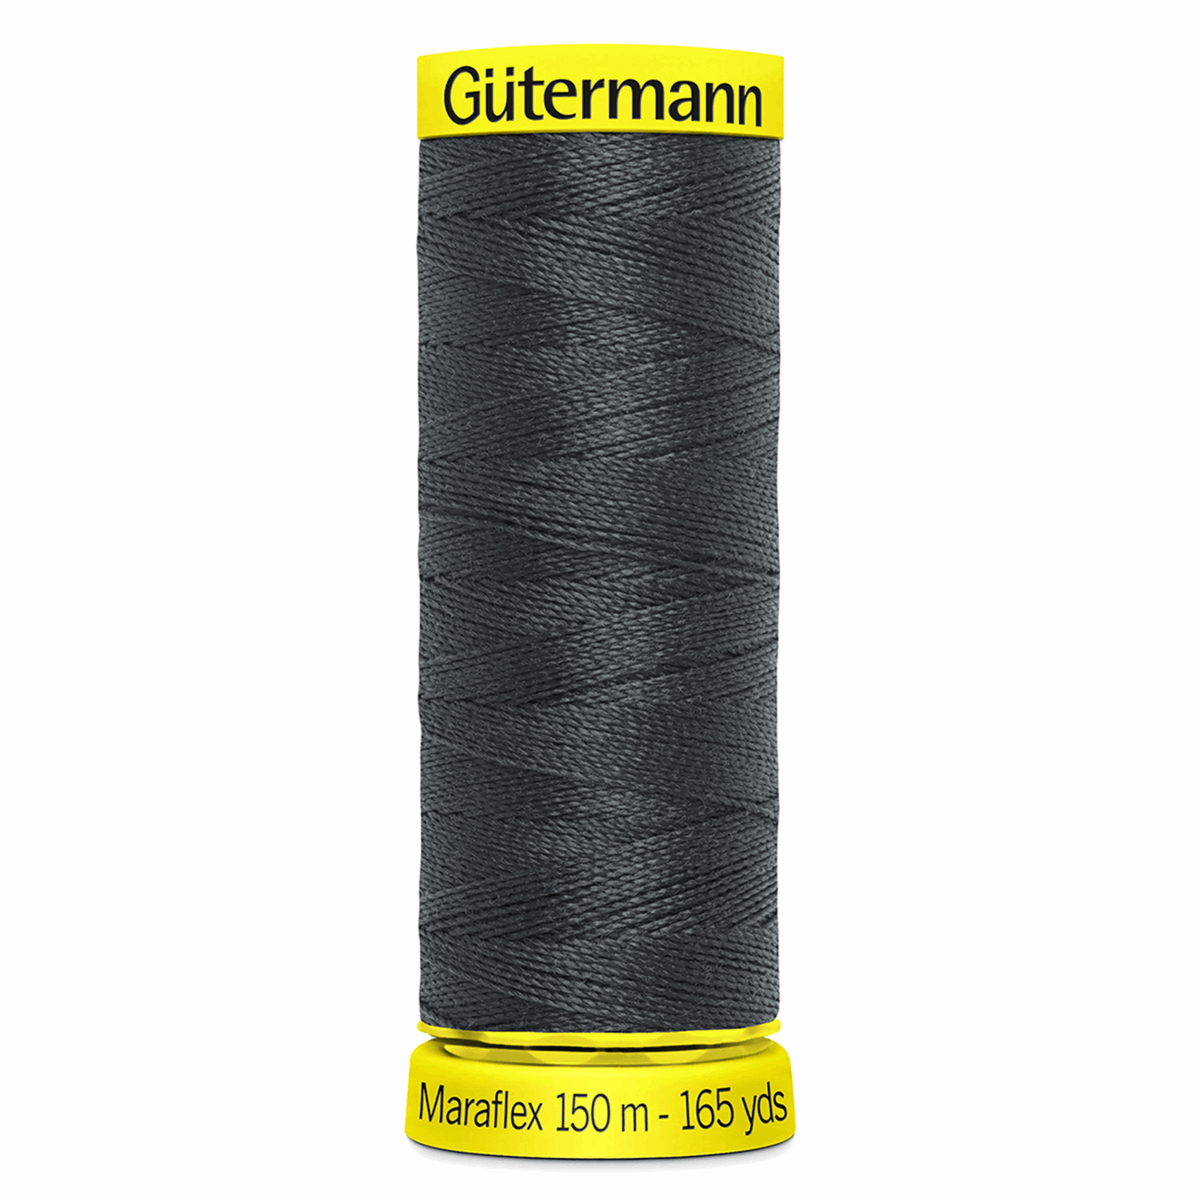 Gutermann Maraflex Elastic Sewing Thread 150m Dark Grey 36